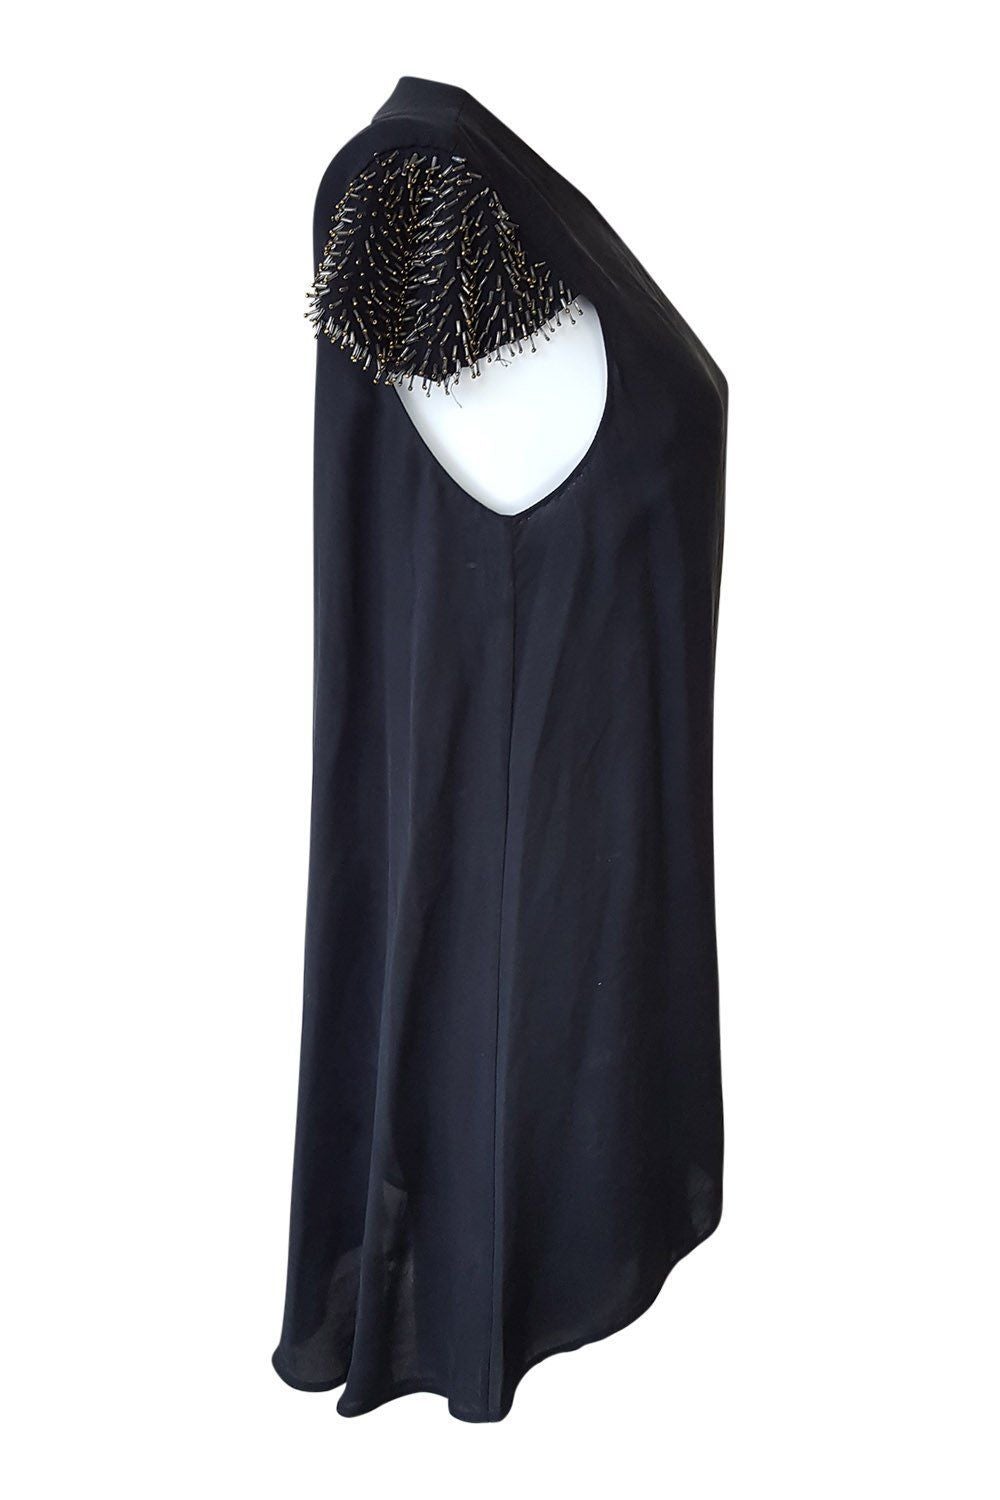 3.1 PHILLIP LIM Black Dress Short Sleeves Asymmetric Hem (UK 8) - Phillip Lim - The Freperie